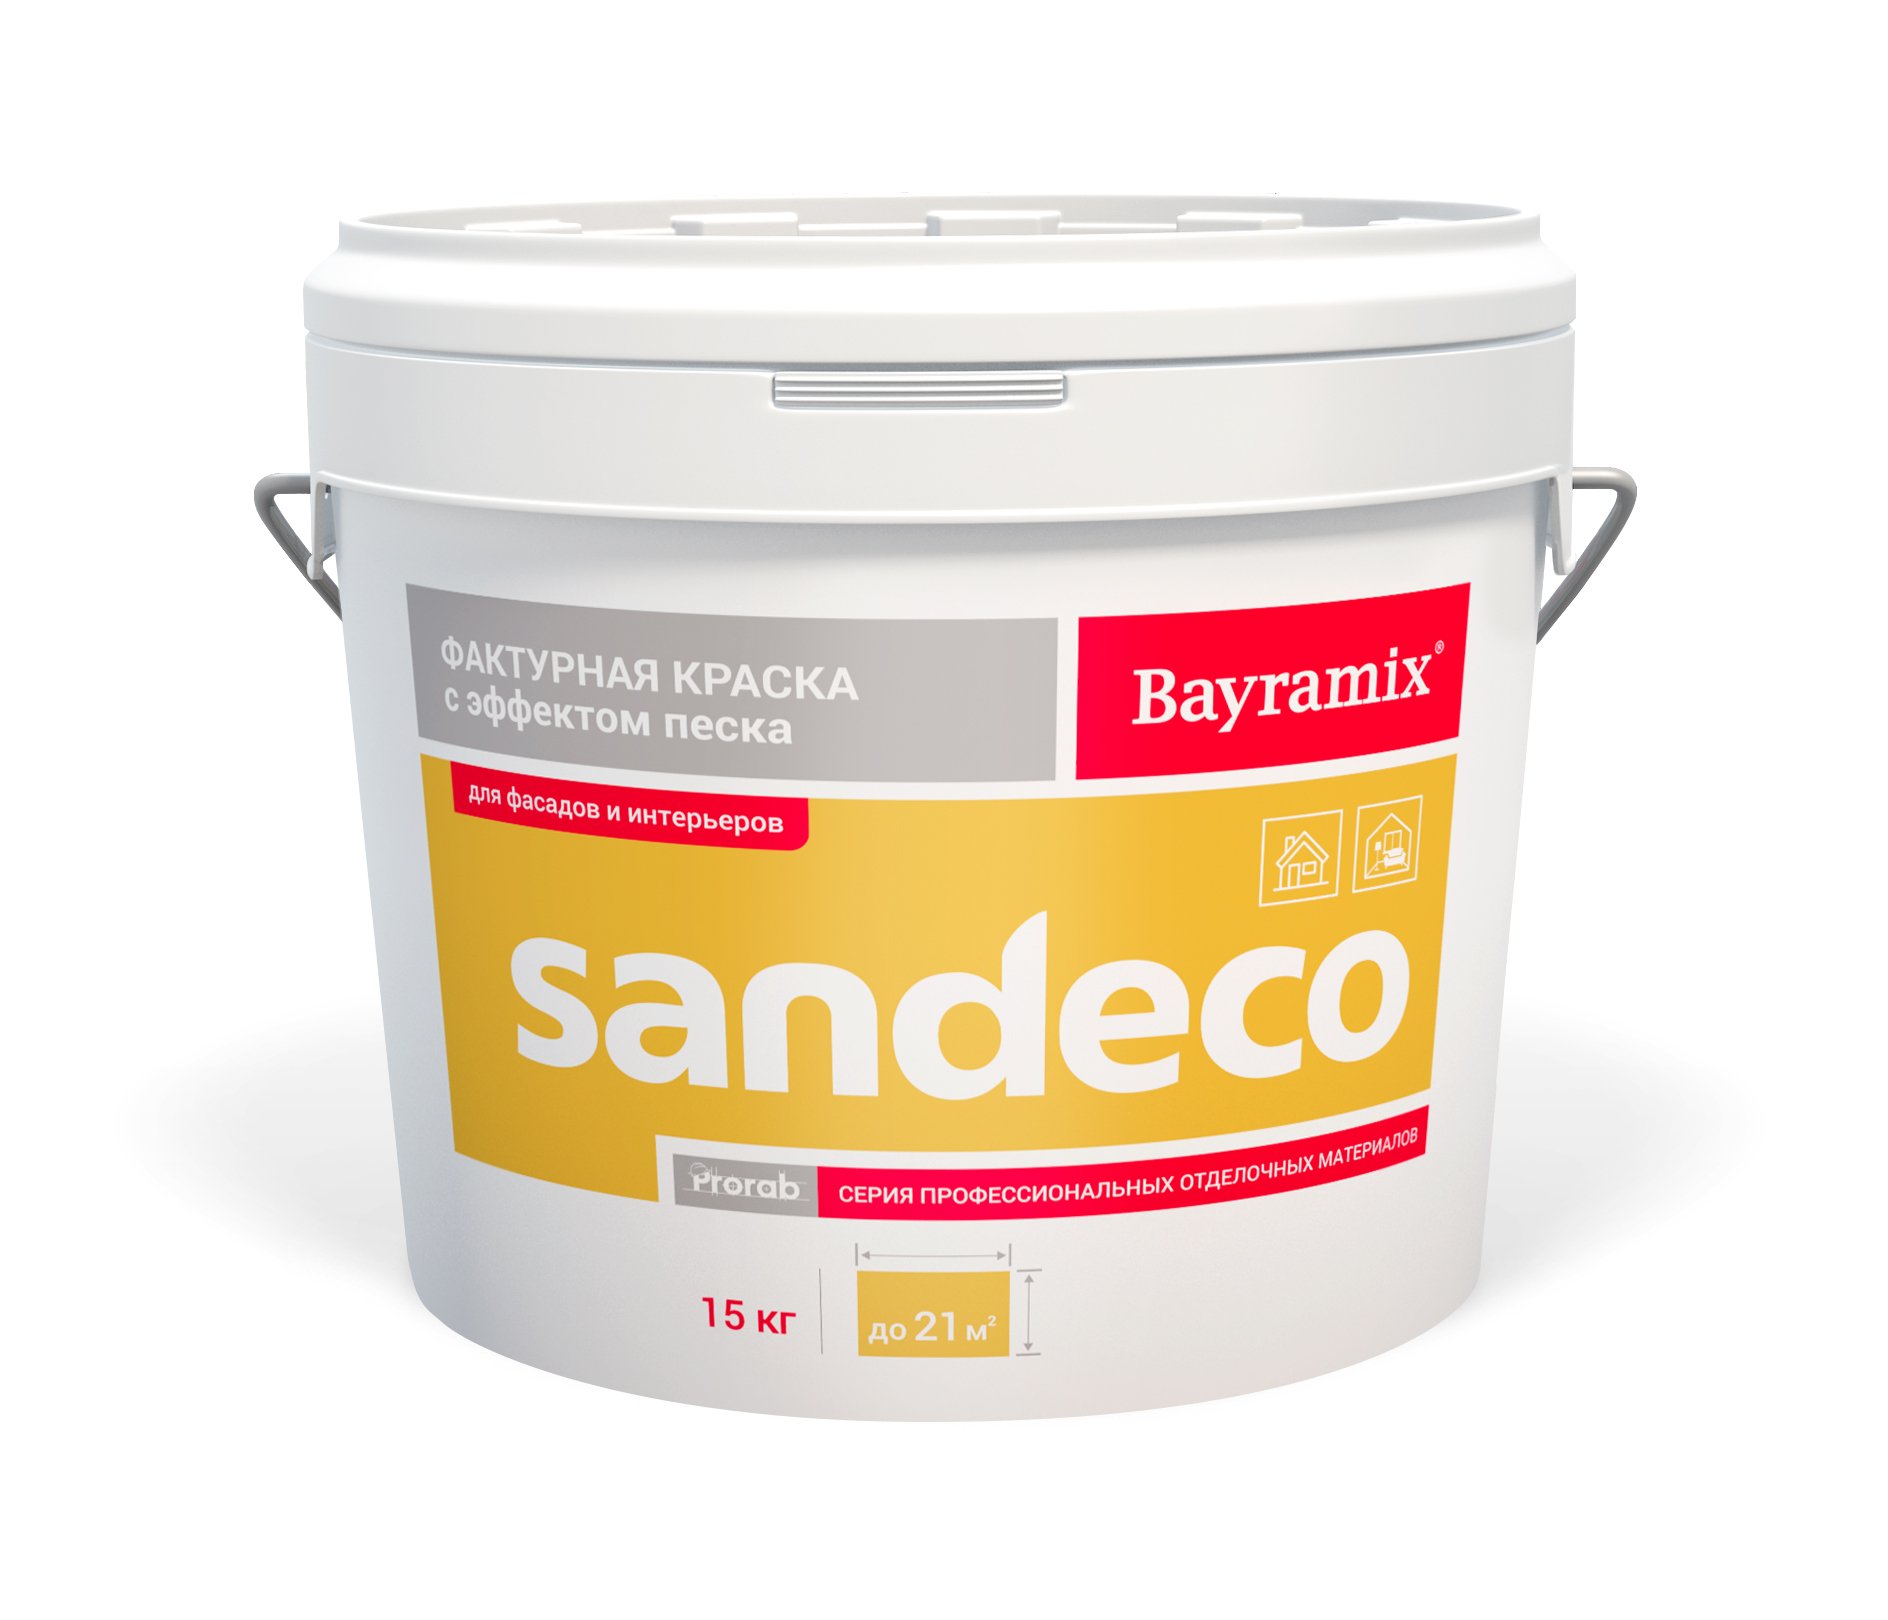 Фактурная краска Bayramix Sandeco для наружных и внутренних работ, 15 кг акриловая универсальная шпатлевка для внутренних и наружных работ лакра